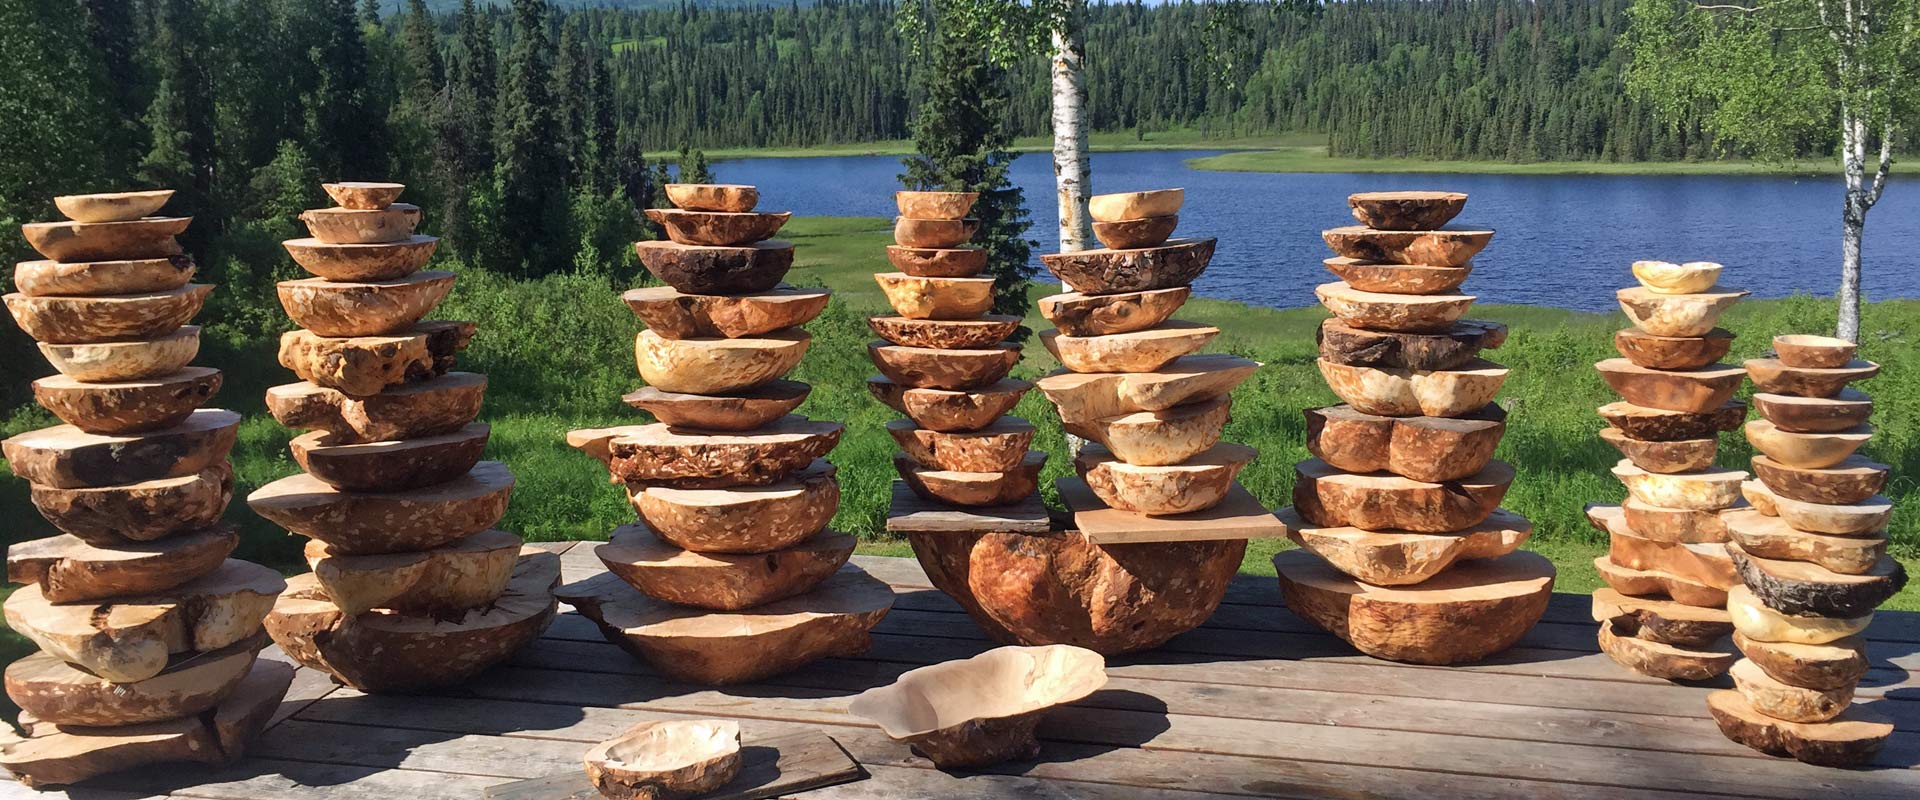 Alaska Birch Bowls Hidden Alaska Guides and Outfitters